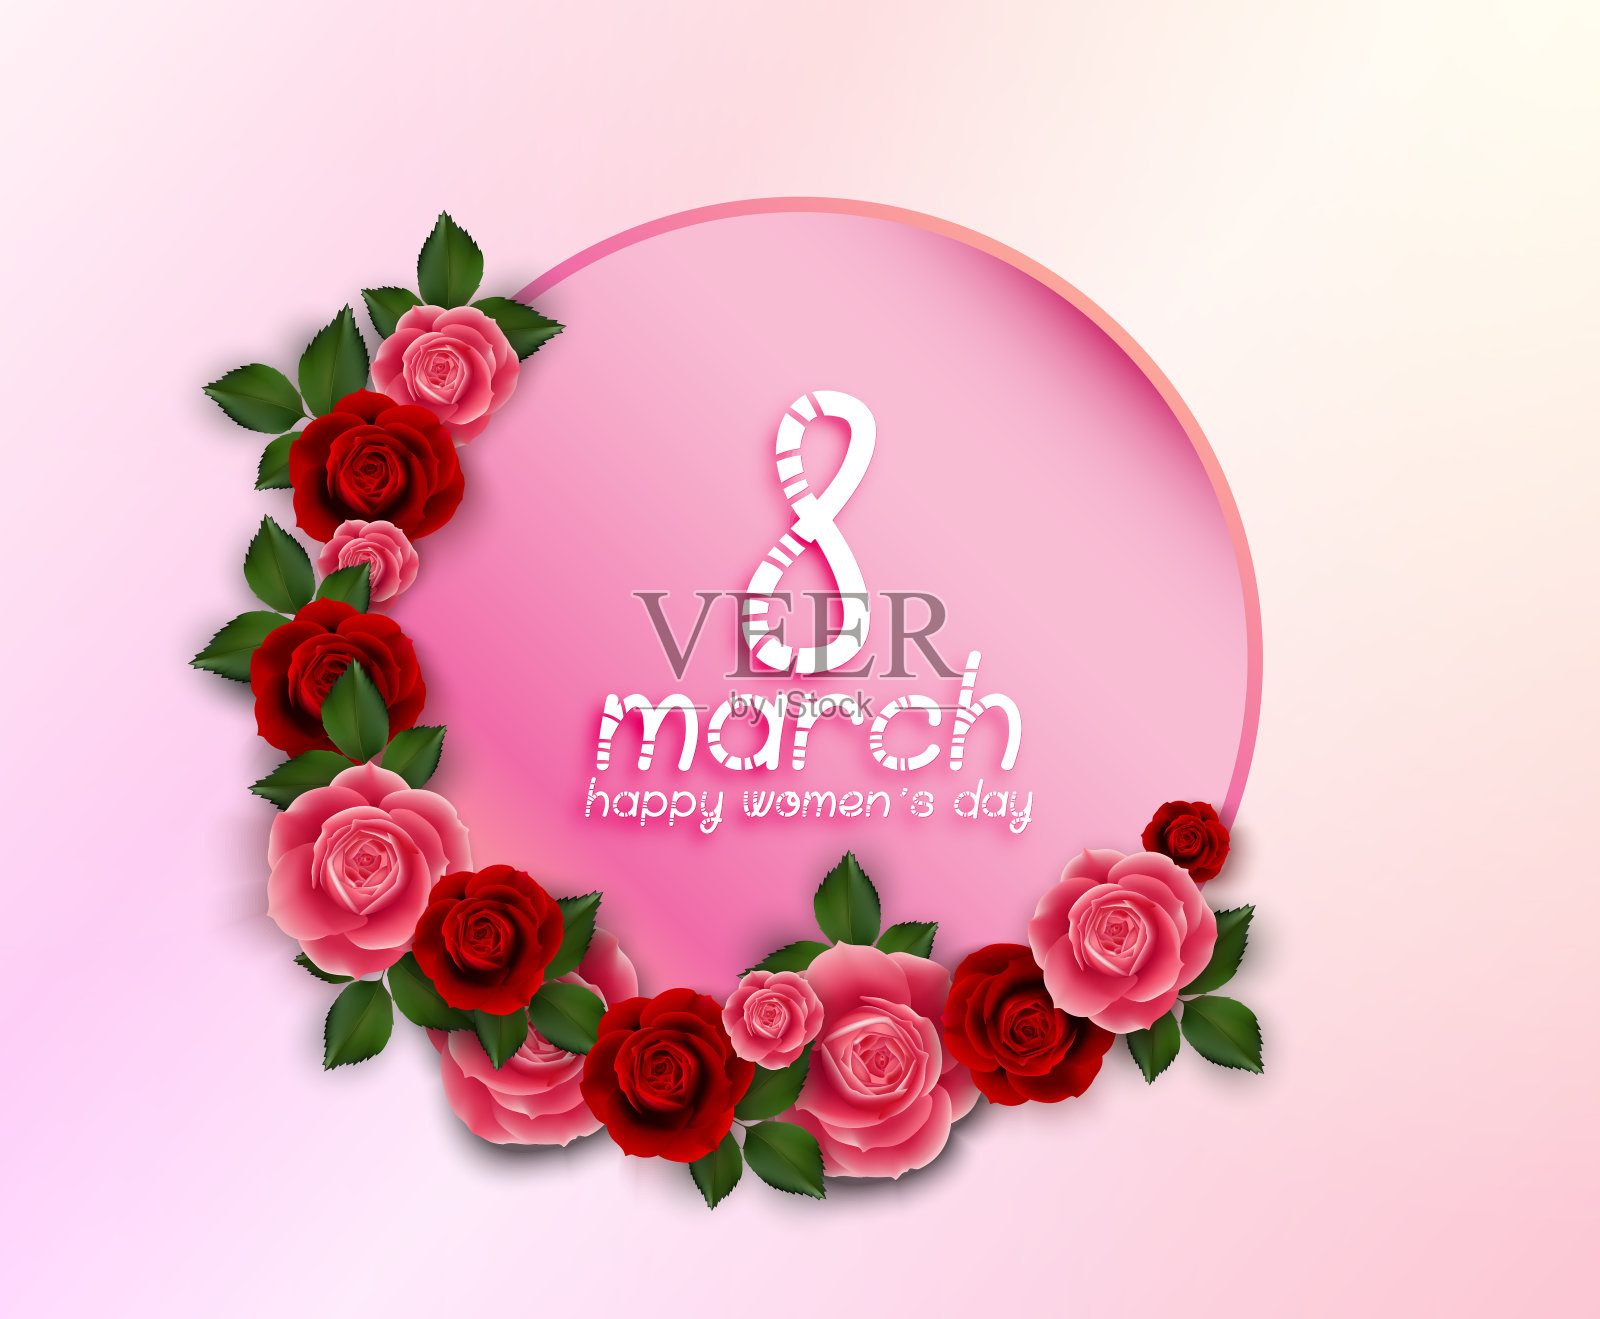 3月8日国际妇女节快乐鲜花贺卡与圆形横幅在粉红色的背景插画图片素材